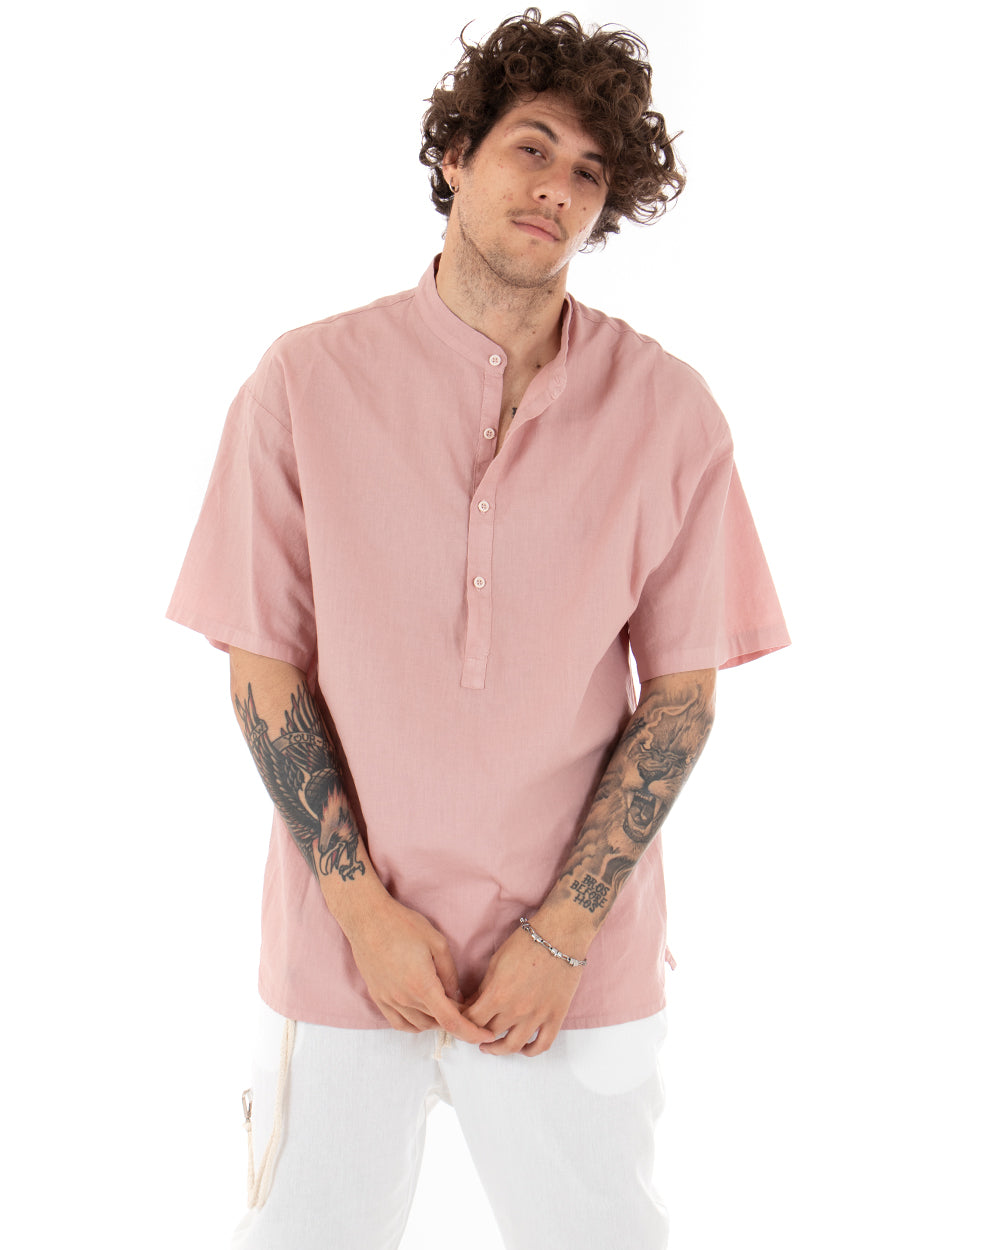 Camicia Uomo Manica Corta Tinta Unita Rosa Collo Coreano Casual GIOSAL-CC1127A